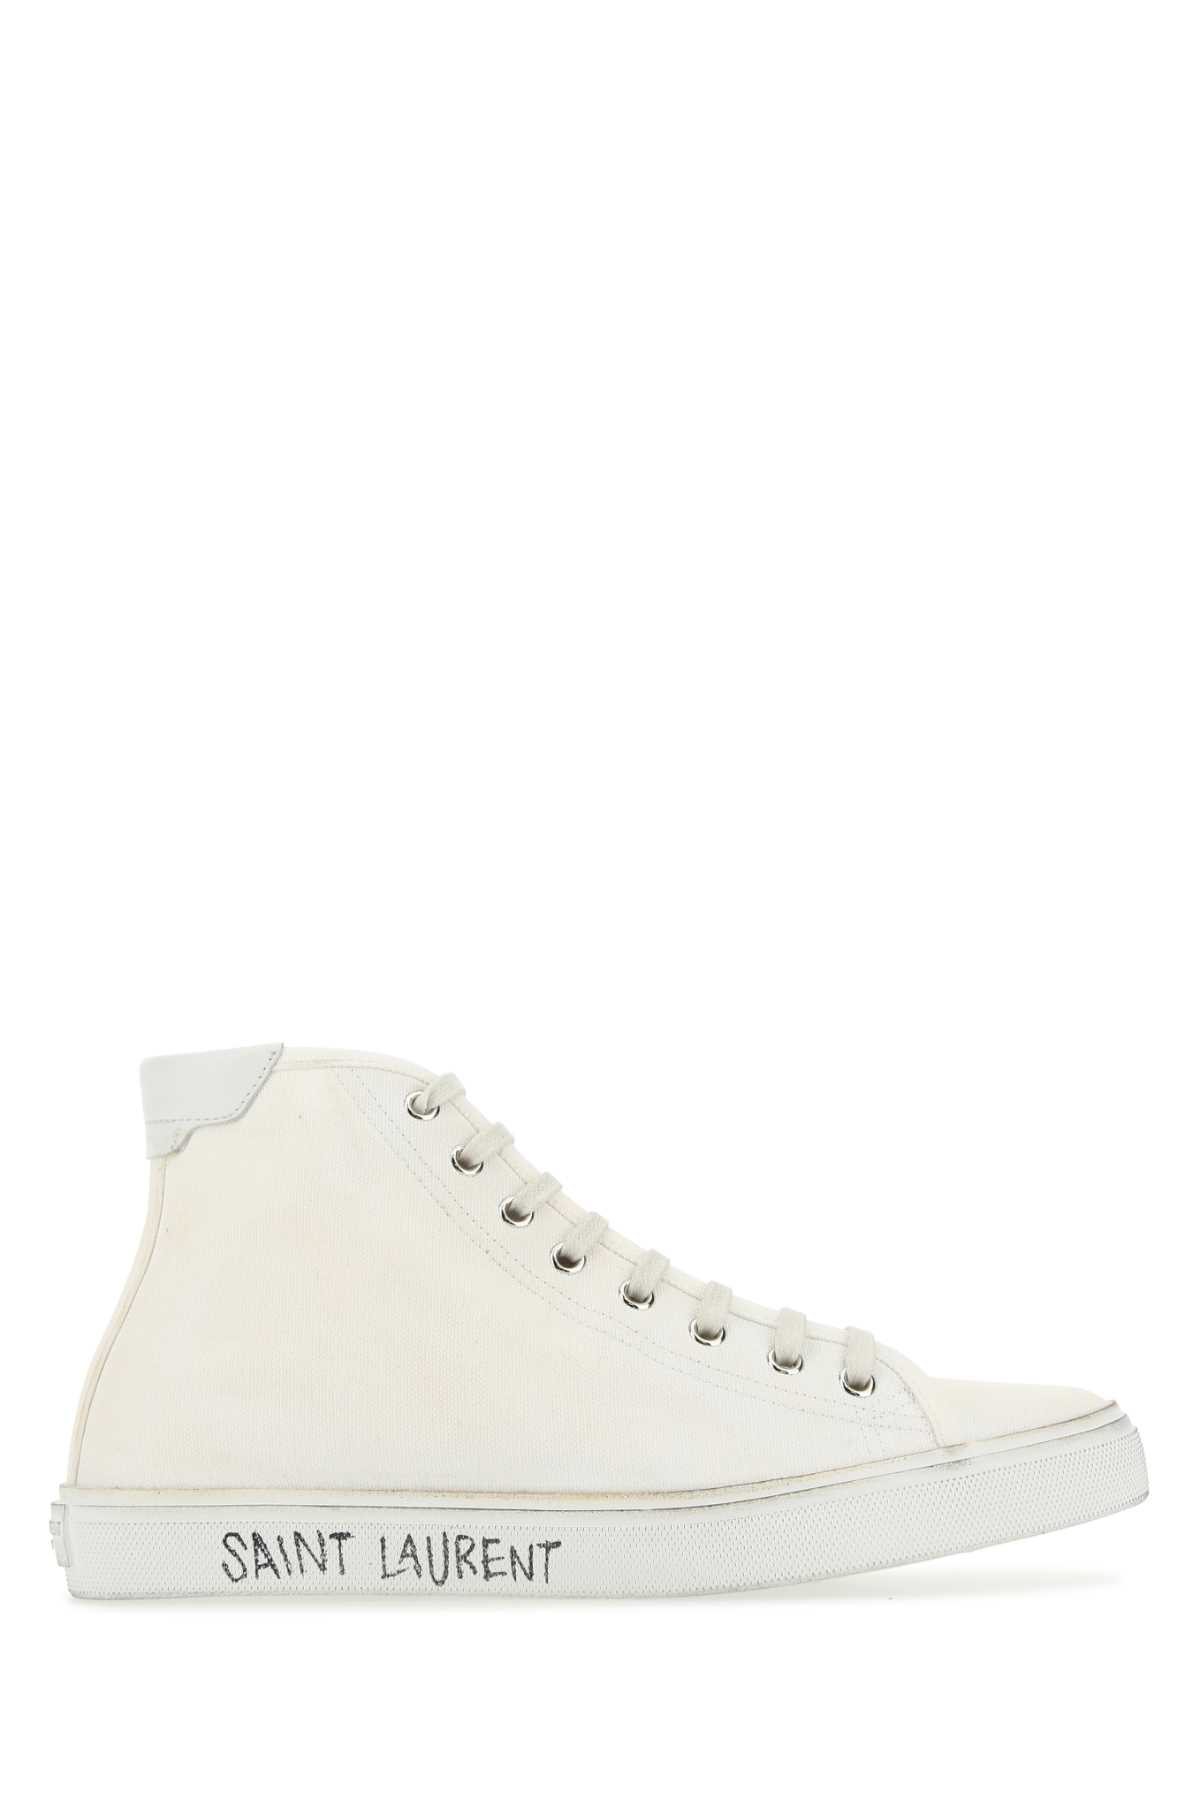 Shop Saint Laurent White Canvas Malibã¹ Sneakers In 9030